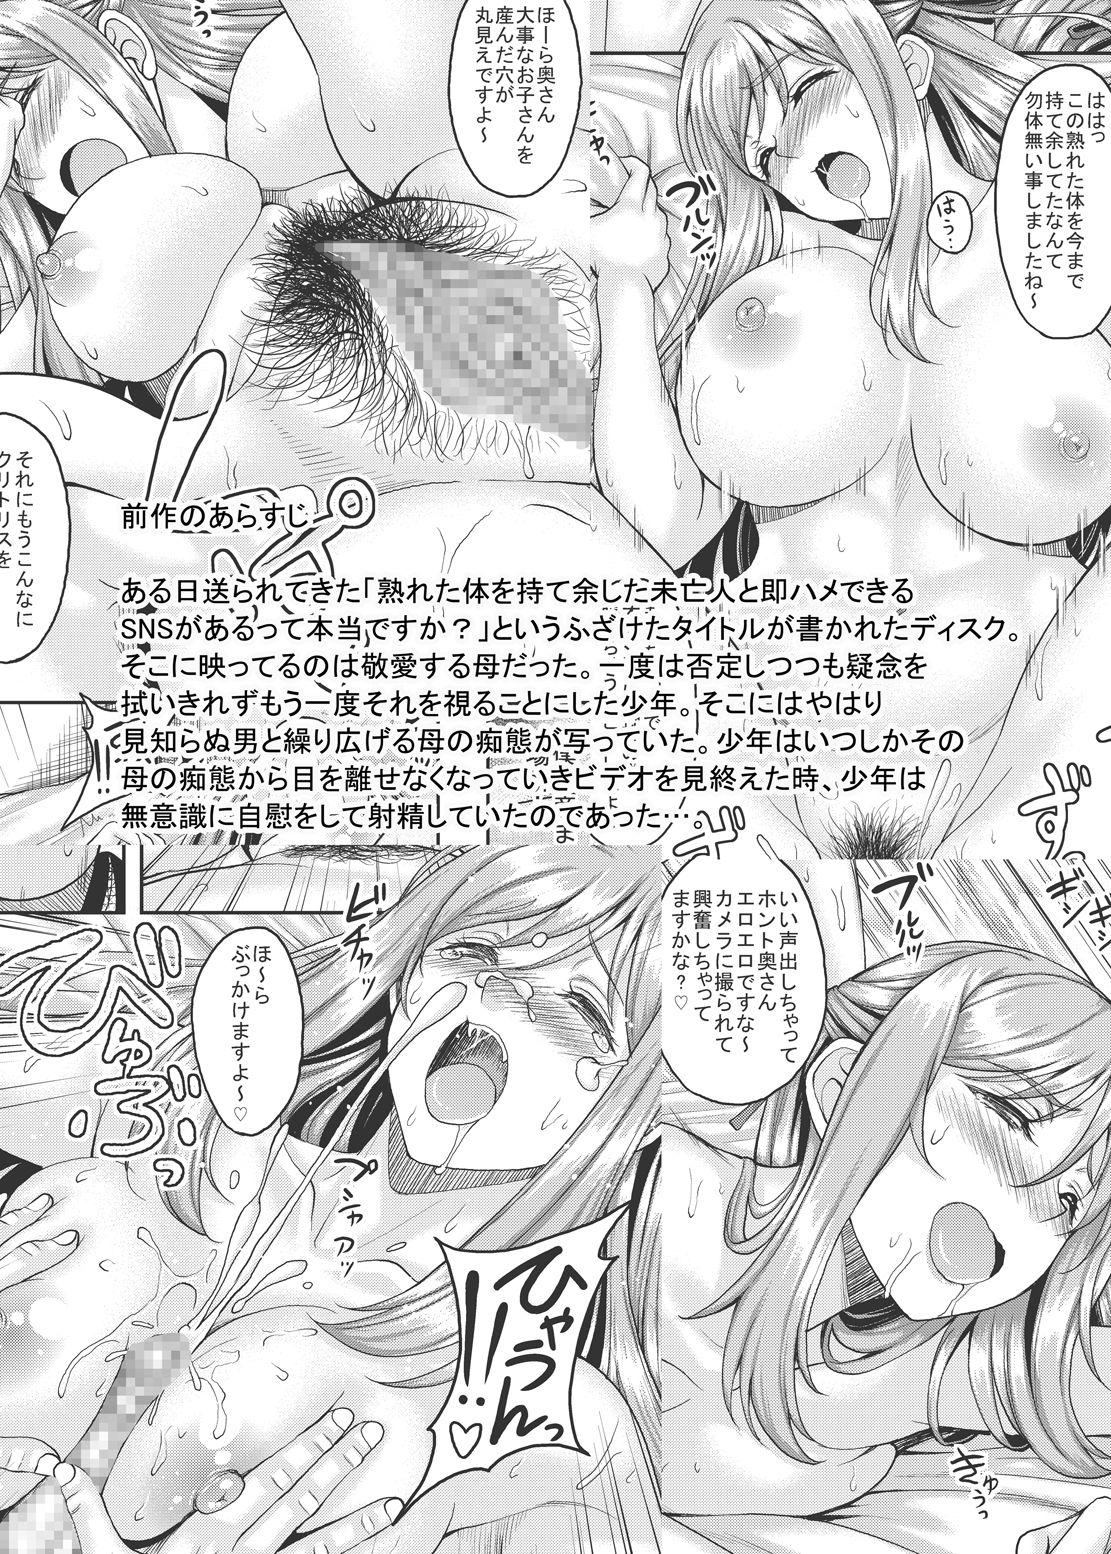 Pissing Ureta Karada o Moteamashita Miboujin to Sokuhame Dekiru SNS ga Arutte Hontou desu ka? 2 - Original Bunda - Page 3